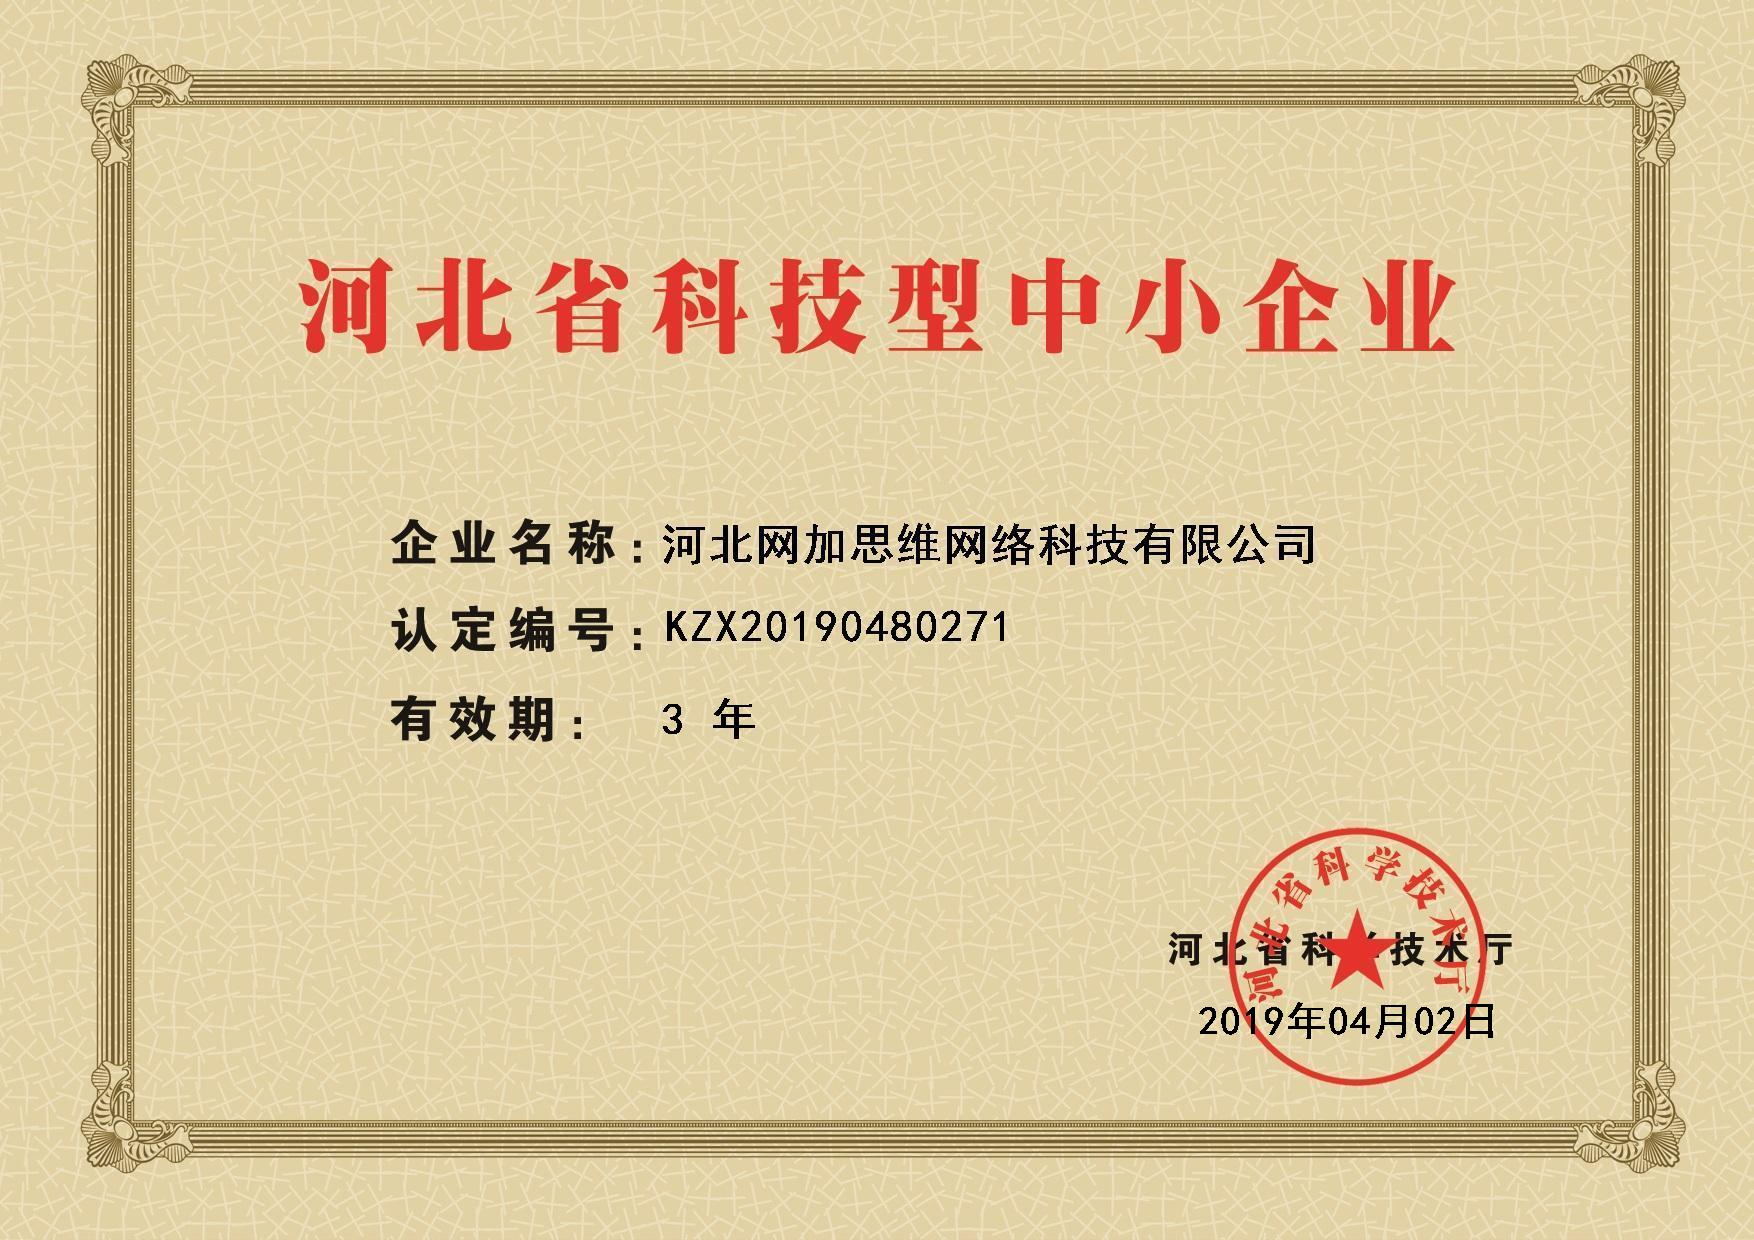 祝贺网加思维获得“河北省科技型中小企业”认证称号